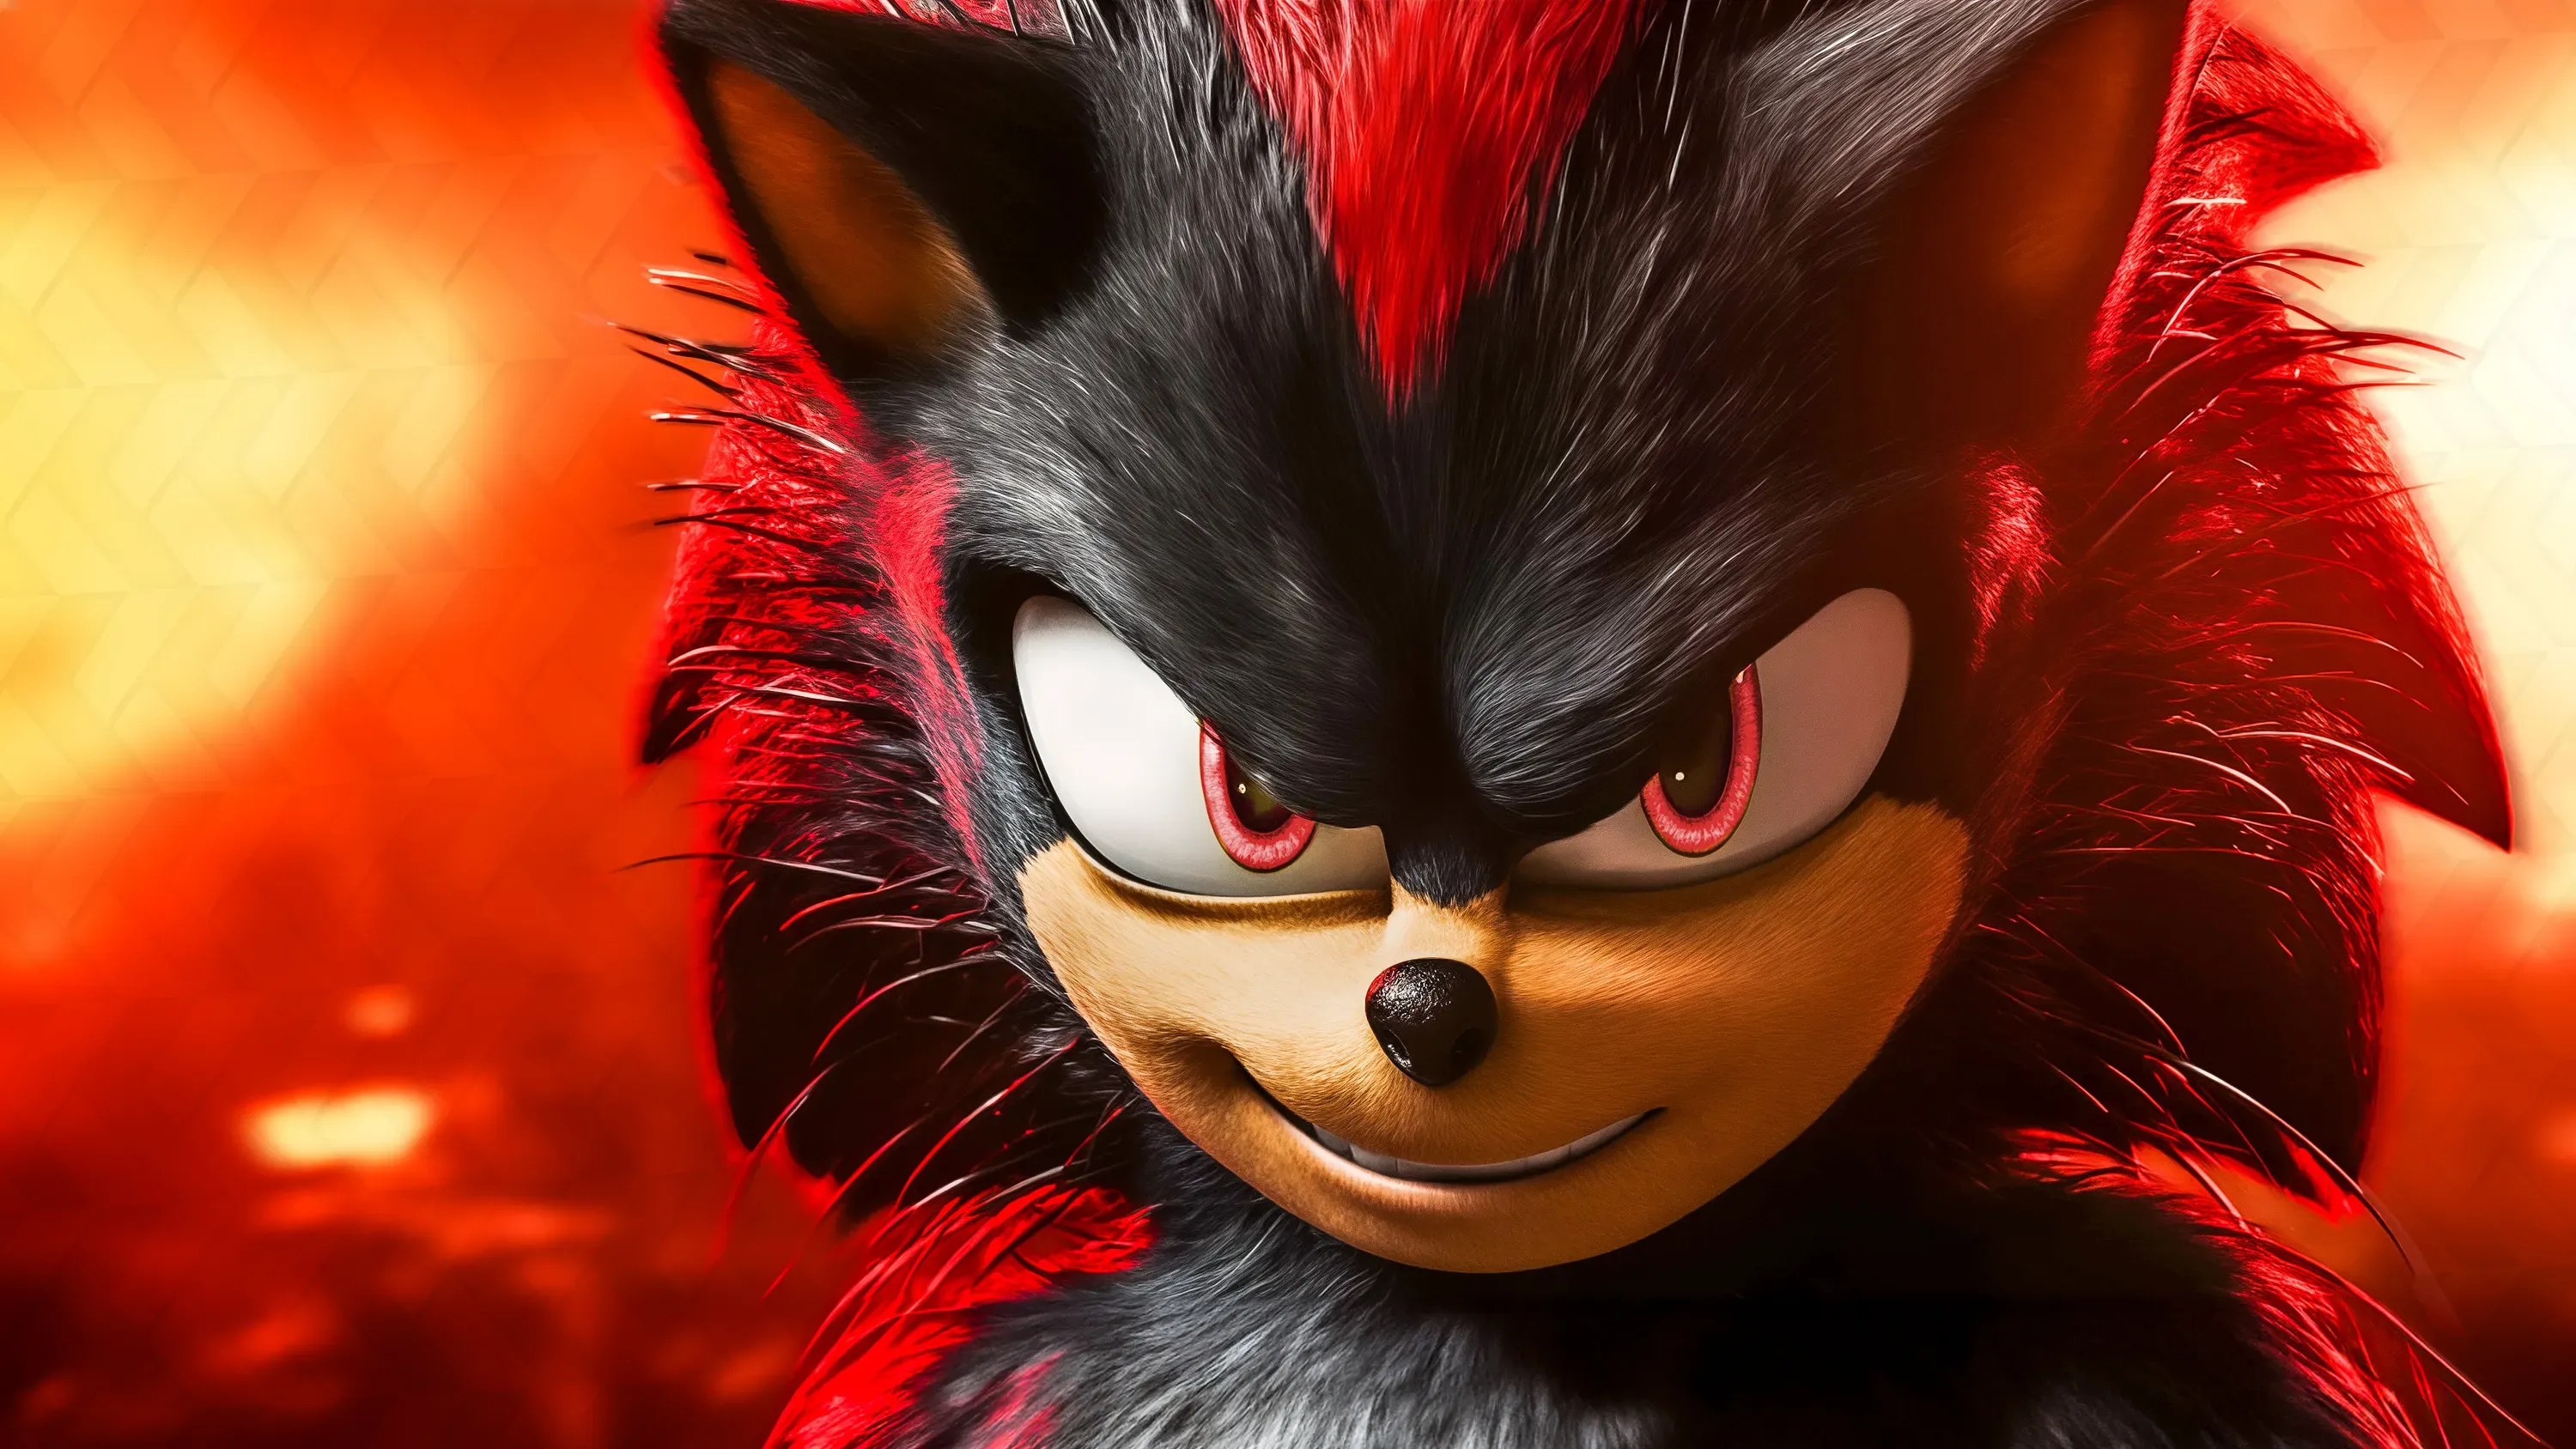 Sonic the Hedgehog 3: описание нового трейлера, дата выхода, актерский состав и многое другое